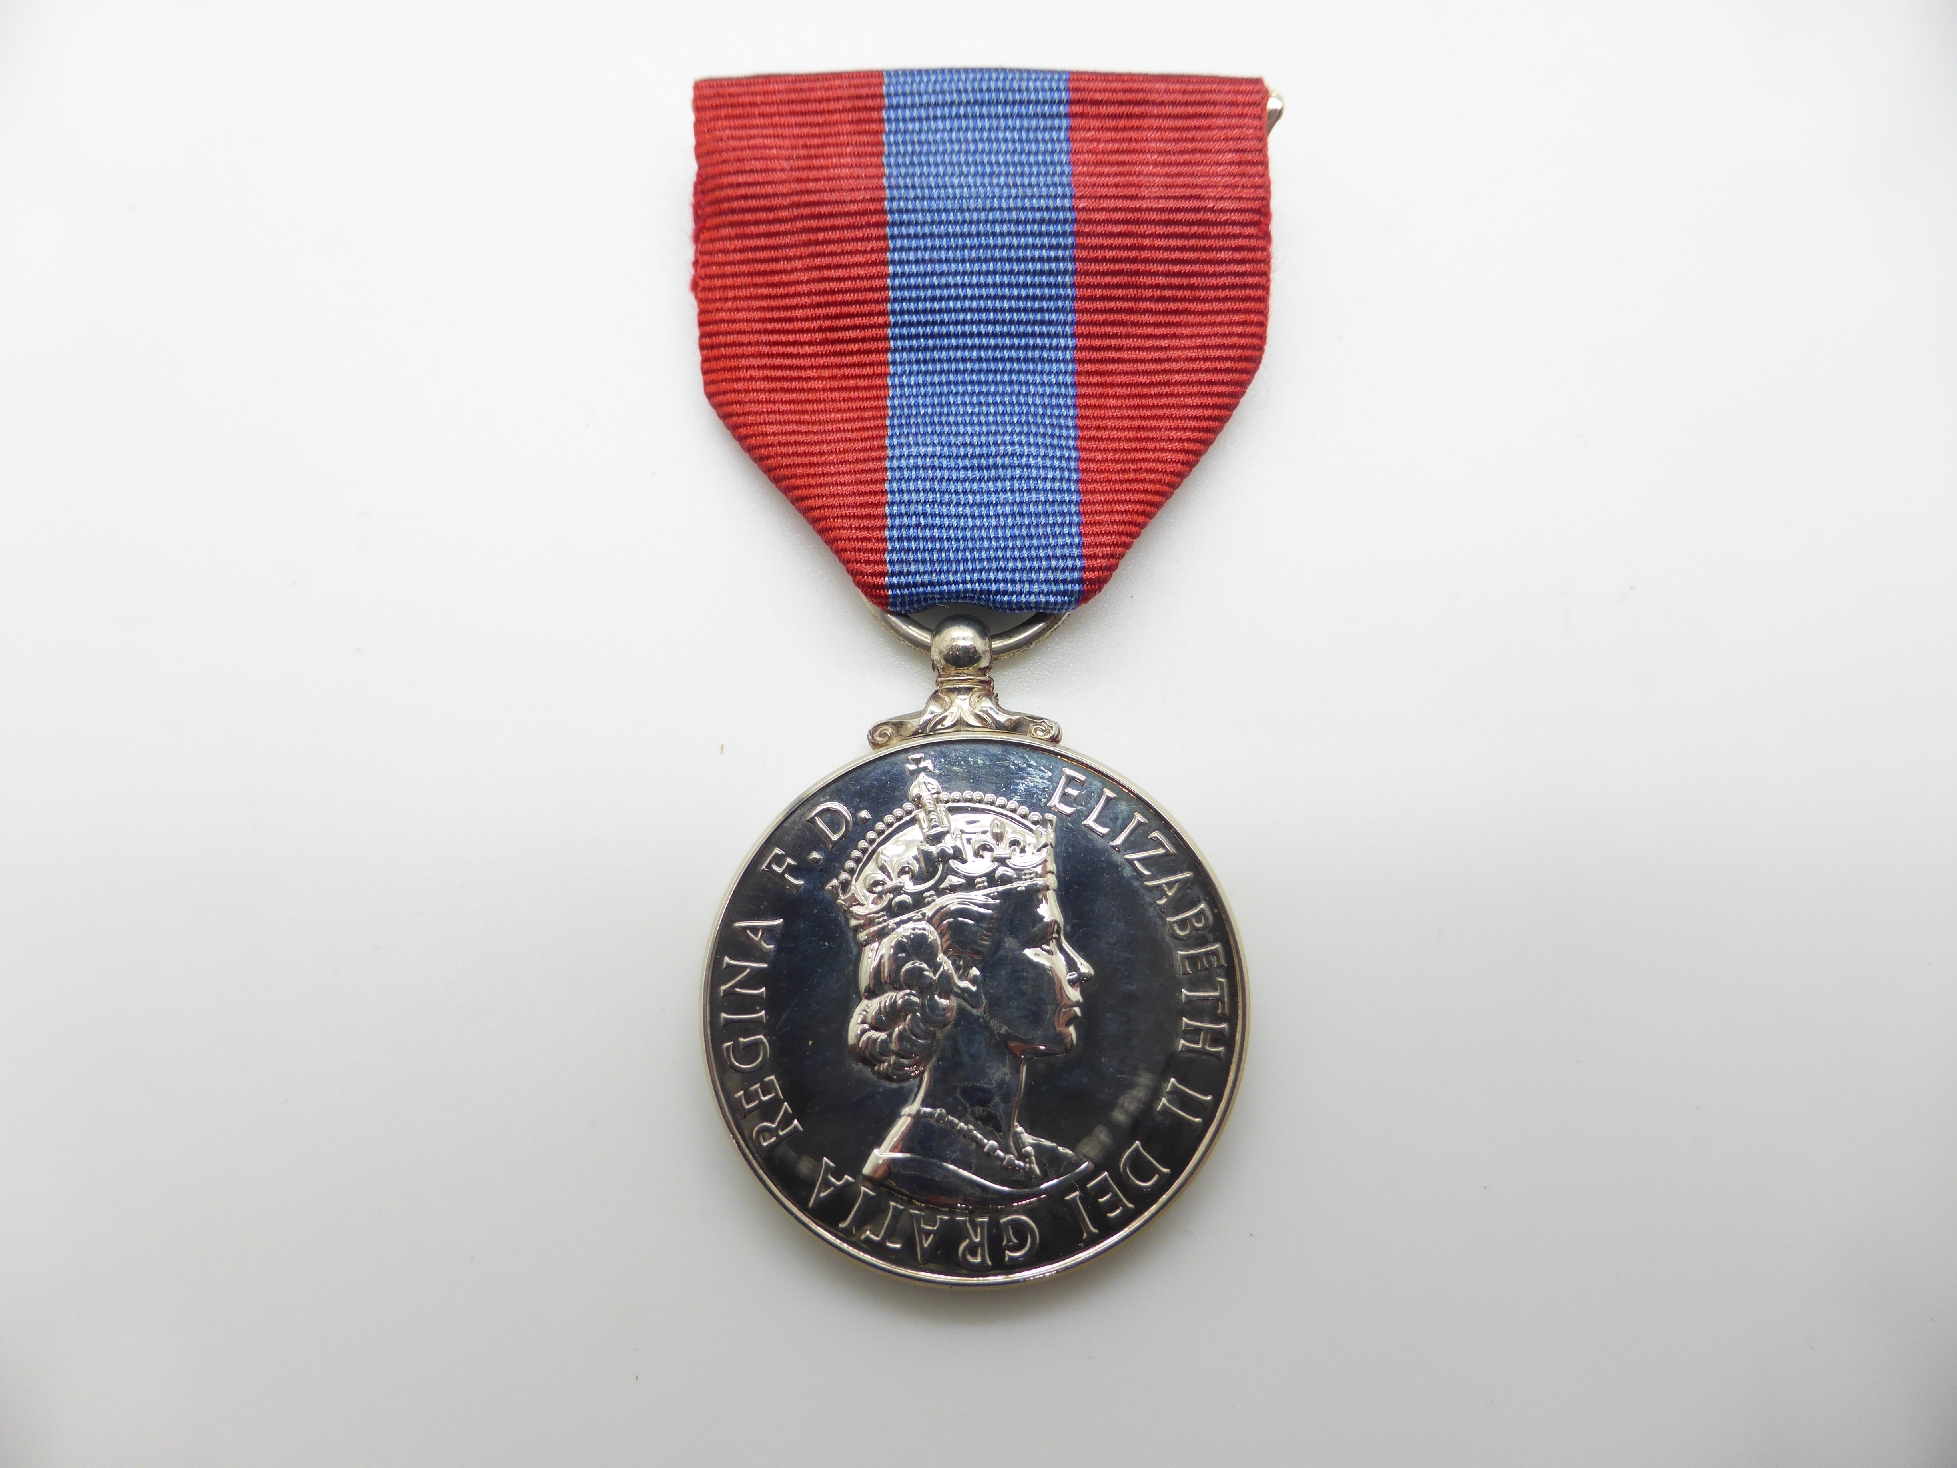 Elizabeth II Imperial Service Medal named to Mrs Jean Margaret Rose together with a WWII War Medal - Image 39 of 47